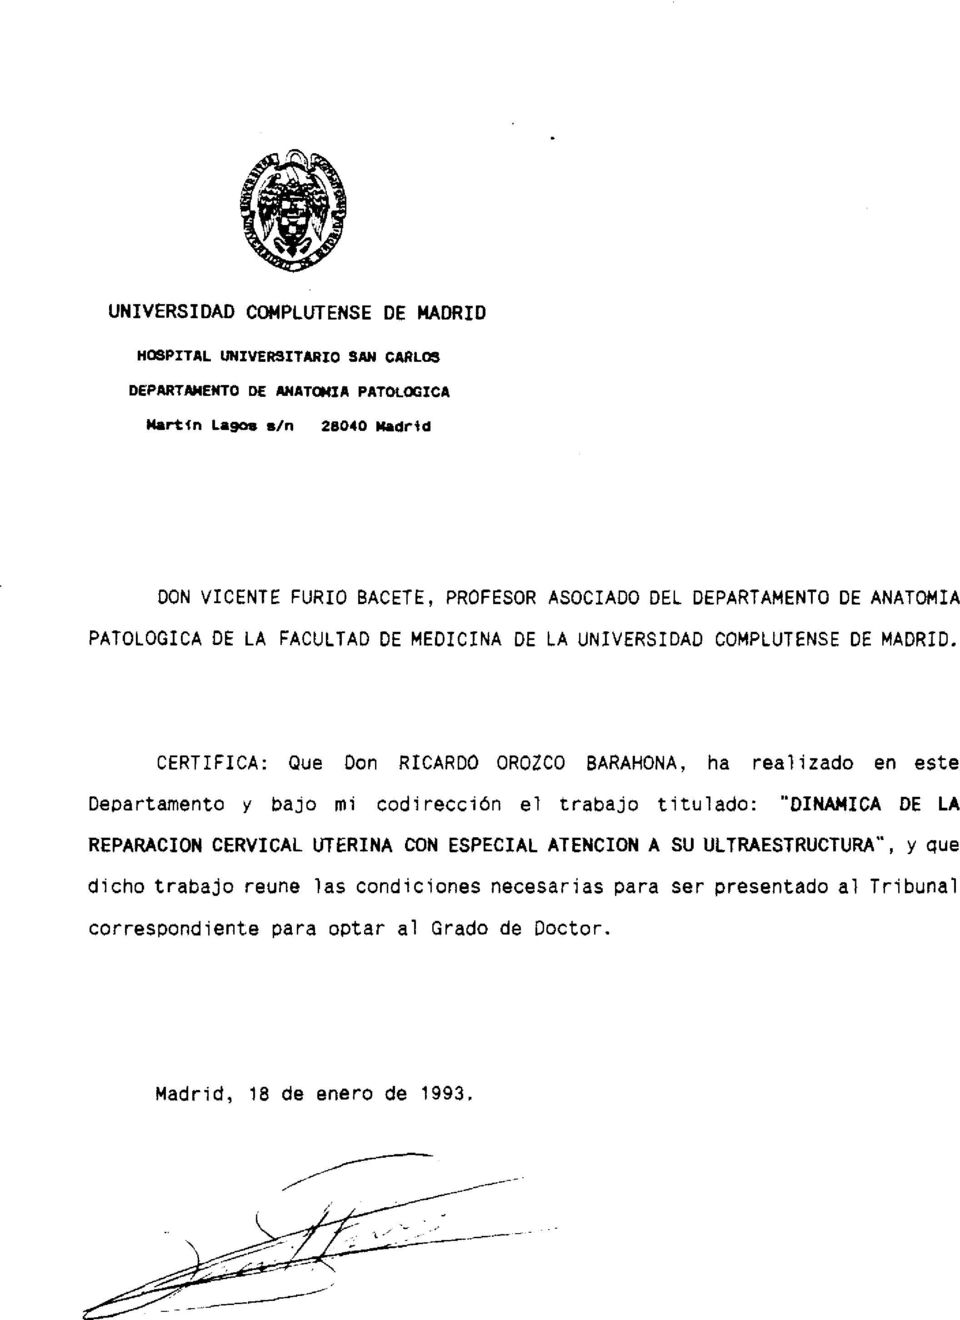 CERTIFICA: Que Don RICARDO OROZCO BARAHONA, ha realizado en este Departamento y bajo mi codirección el trabajo titulado: DINANICA DE LA REPARACION CERVICAL UTERINA